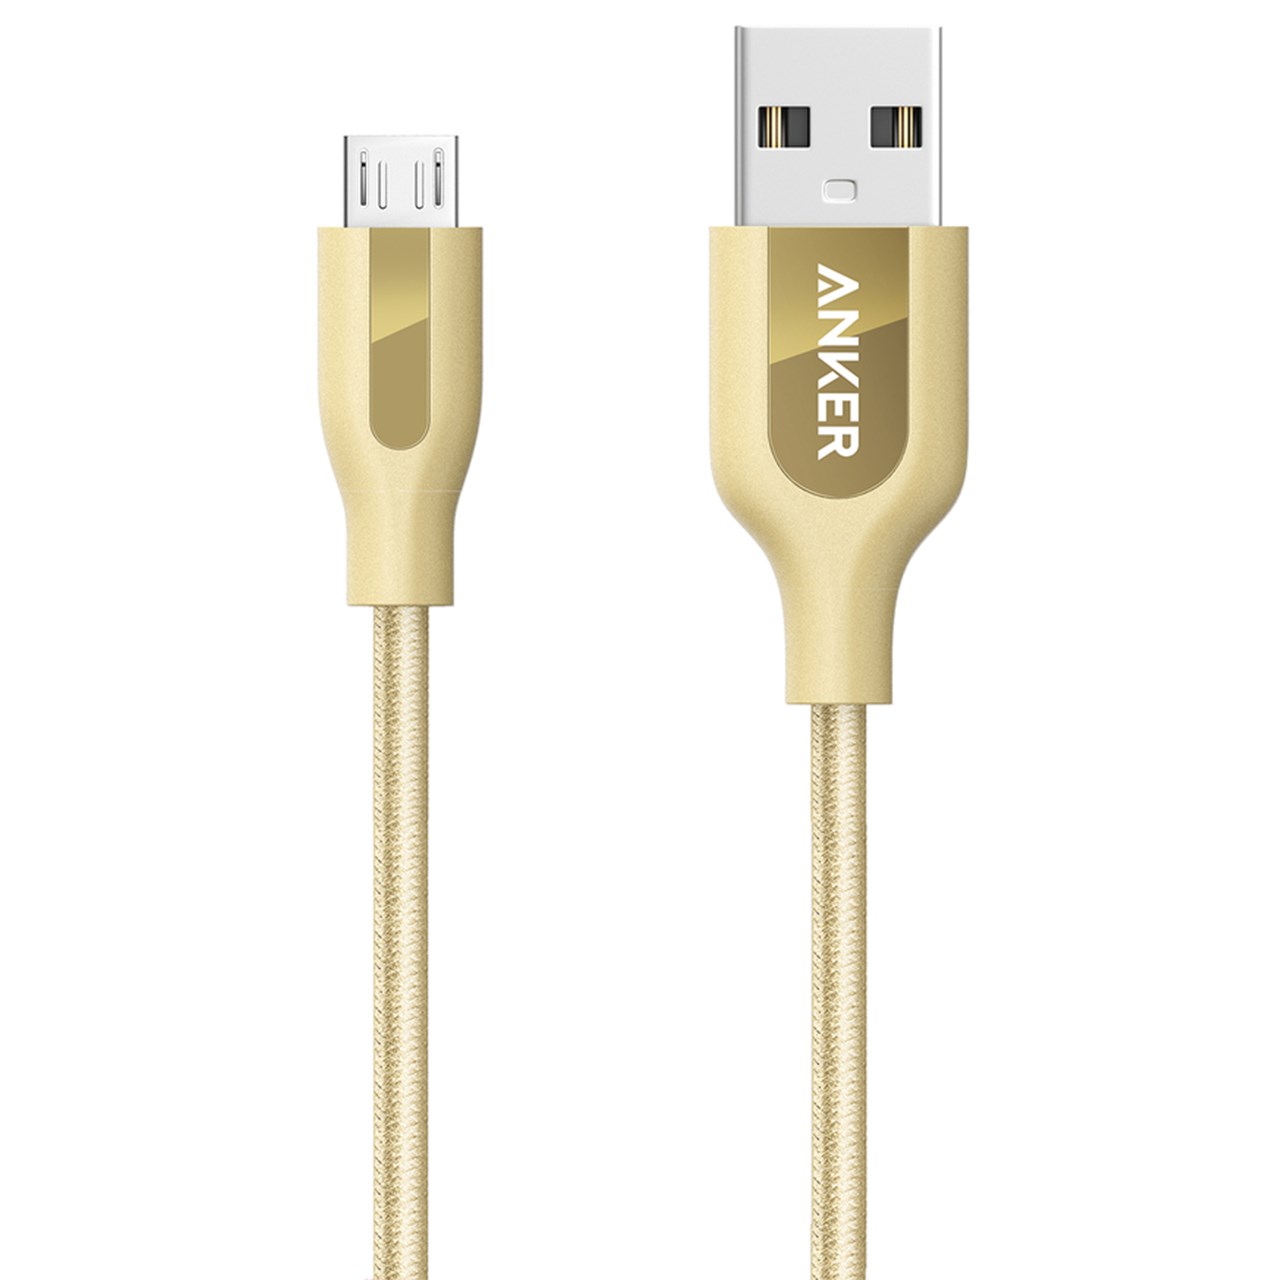 کابل تبدیل USB به MicroUSB انکر مدل A8142 PowerLine Plus به طول 0.9 متر